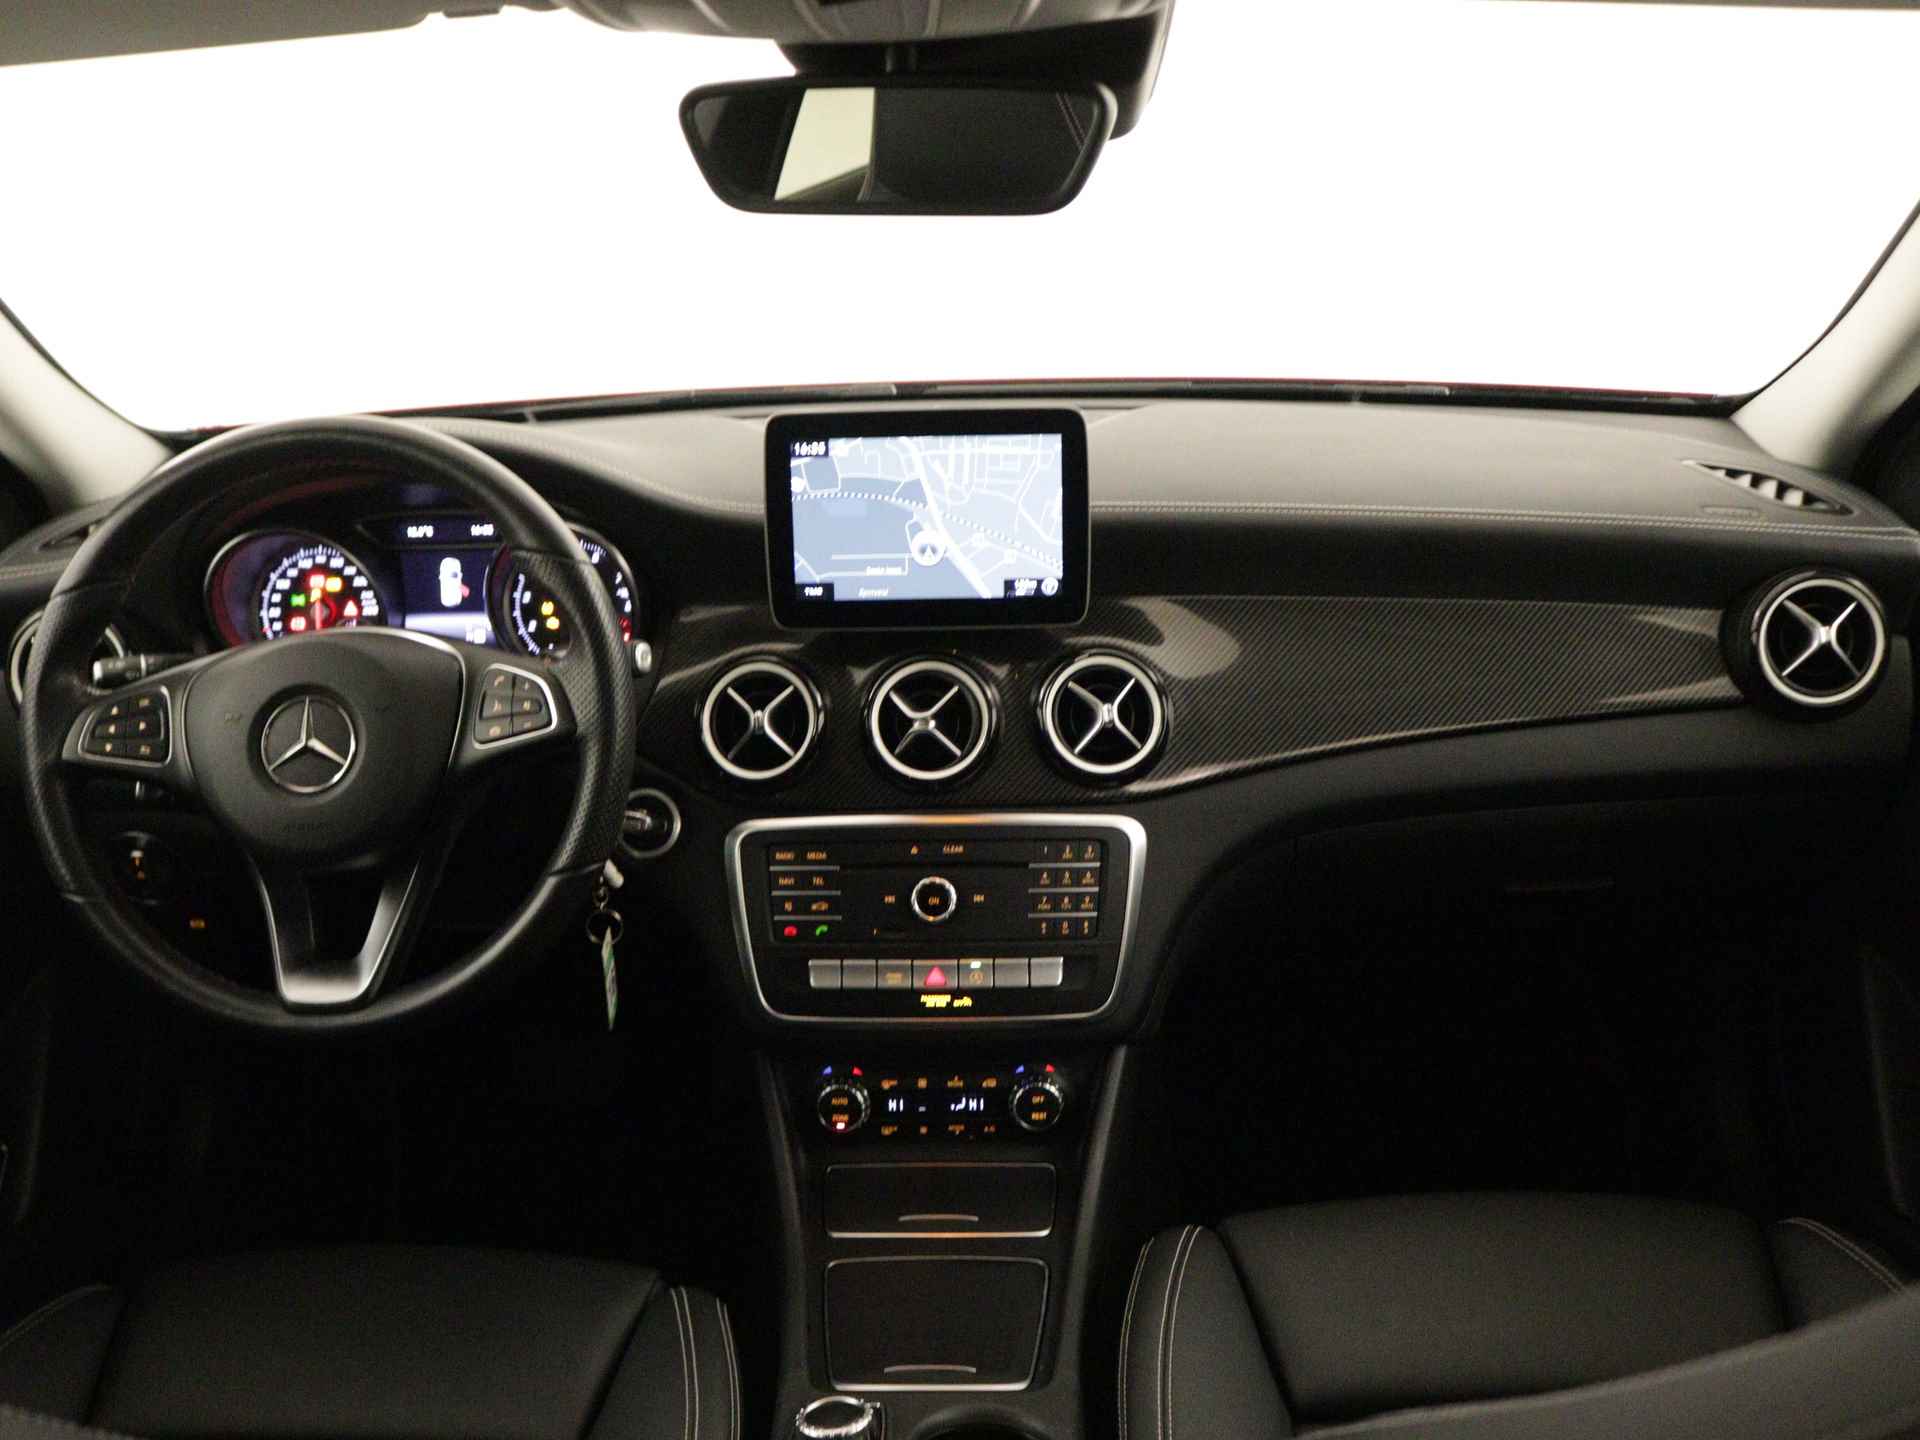 Mercedes-Benz GLA 200 AMG Premium Plus Limited | Multispaaks lichtmetalen velgen | Treeplanken | Navigatie | Parking support | Leder bekleding | inclusief 24 maanden MB Certified garantie voor europa - 5/39